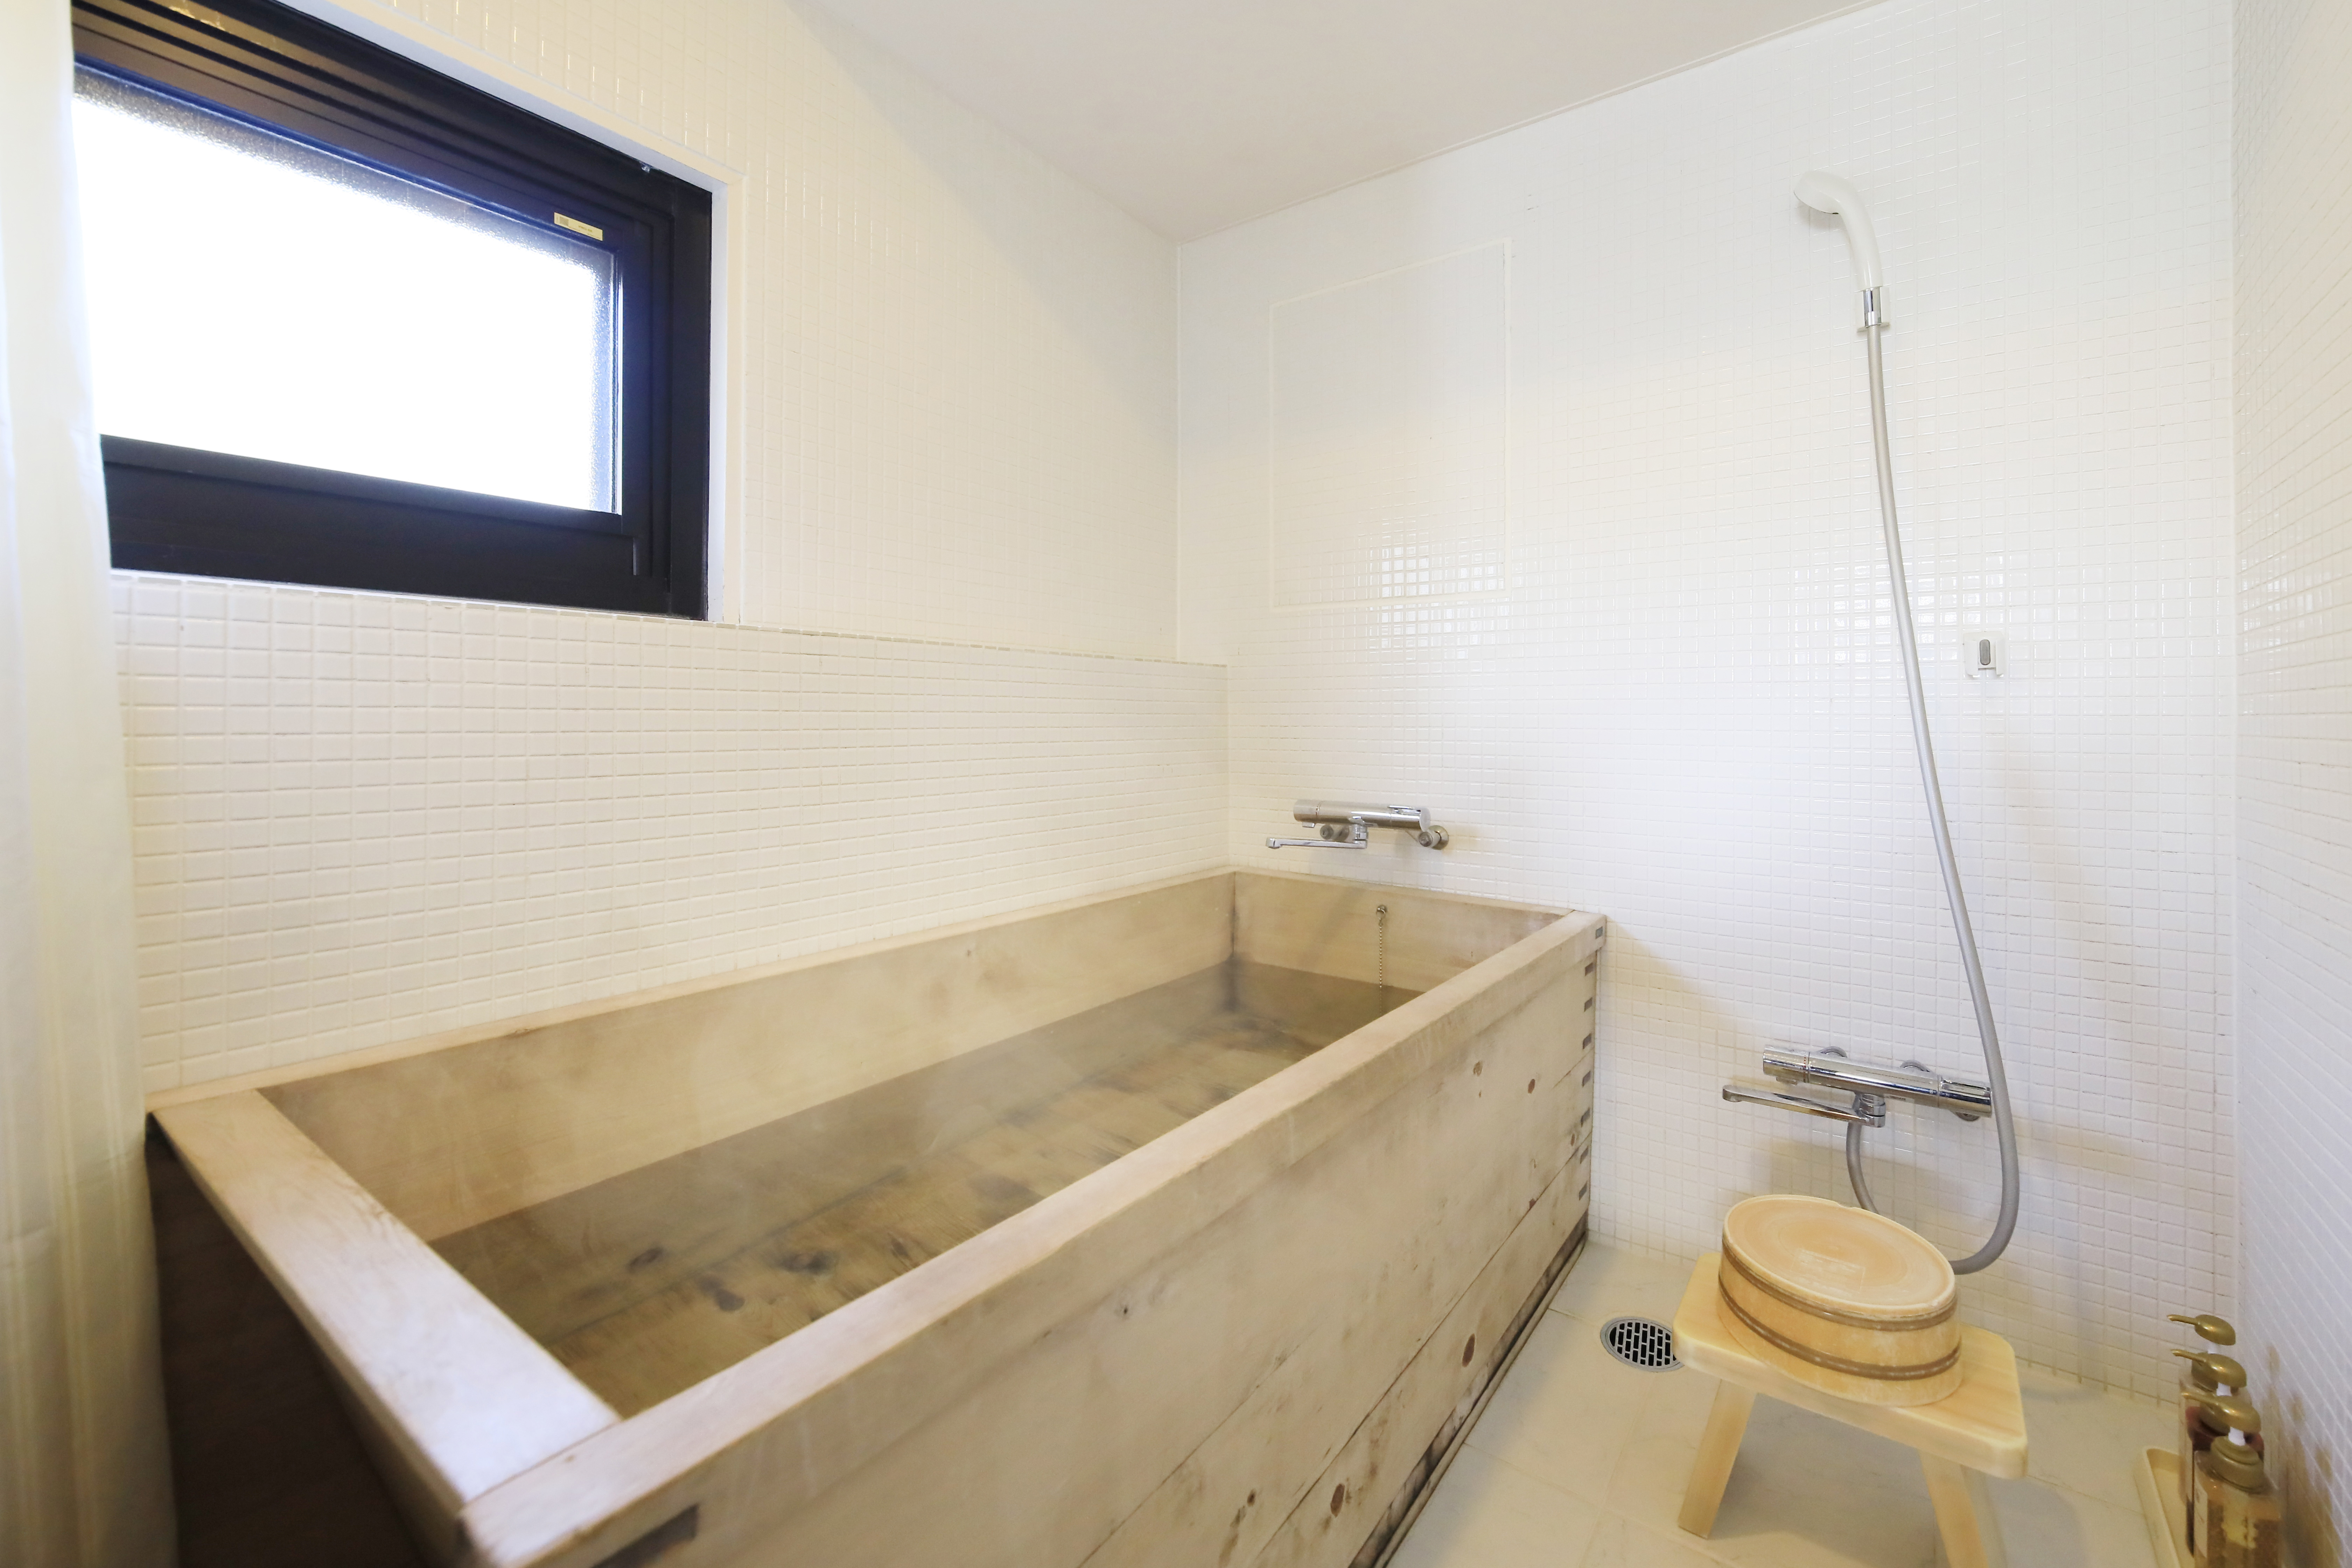 【海側客室】16畳檜風呂和室